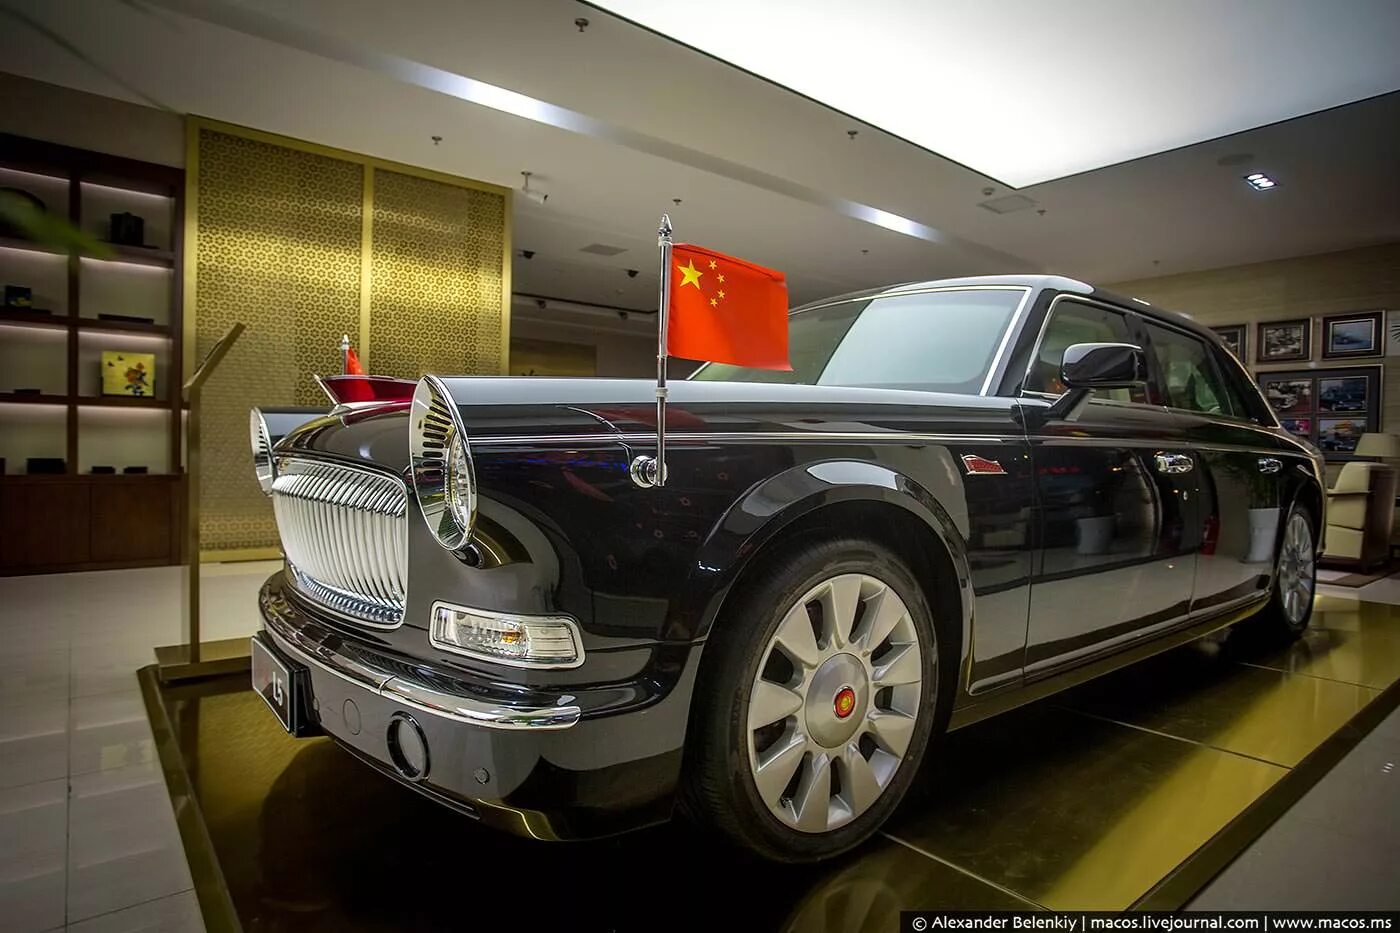 Машина за 1 доллар. Hongqi Роллс Ройс. Китайский Rolls-Royce Hongqi e-hs9. Роллс Ройс Майбах. Самый дорогой Роллс Ройс в мире.